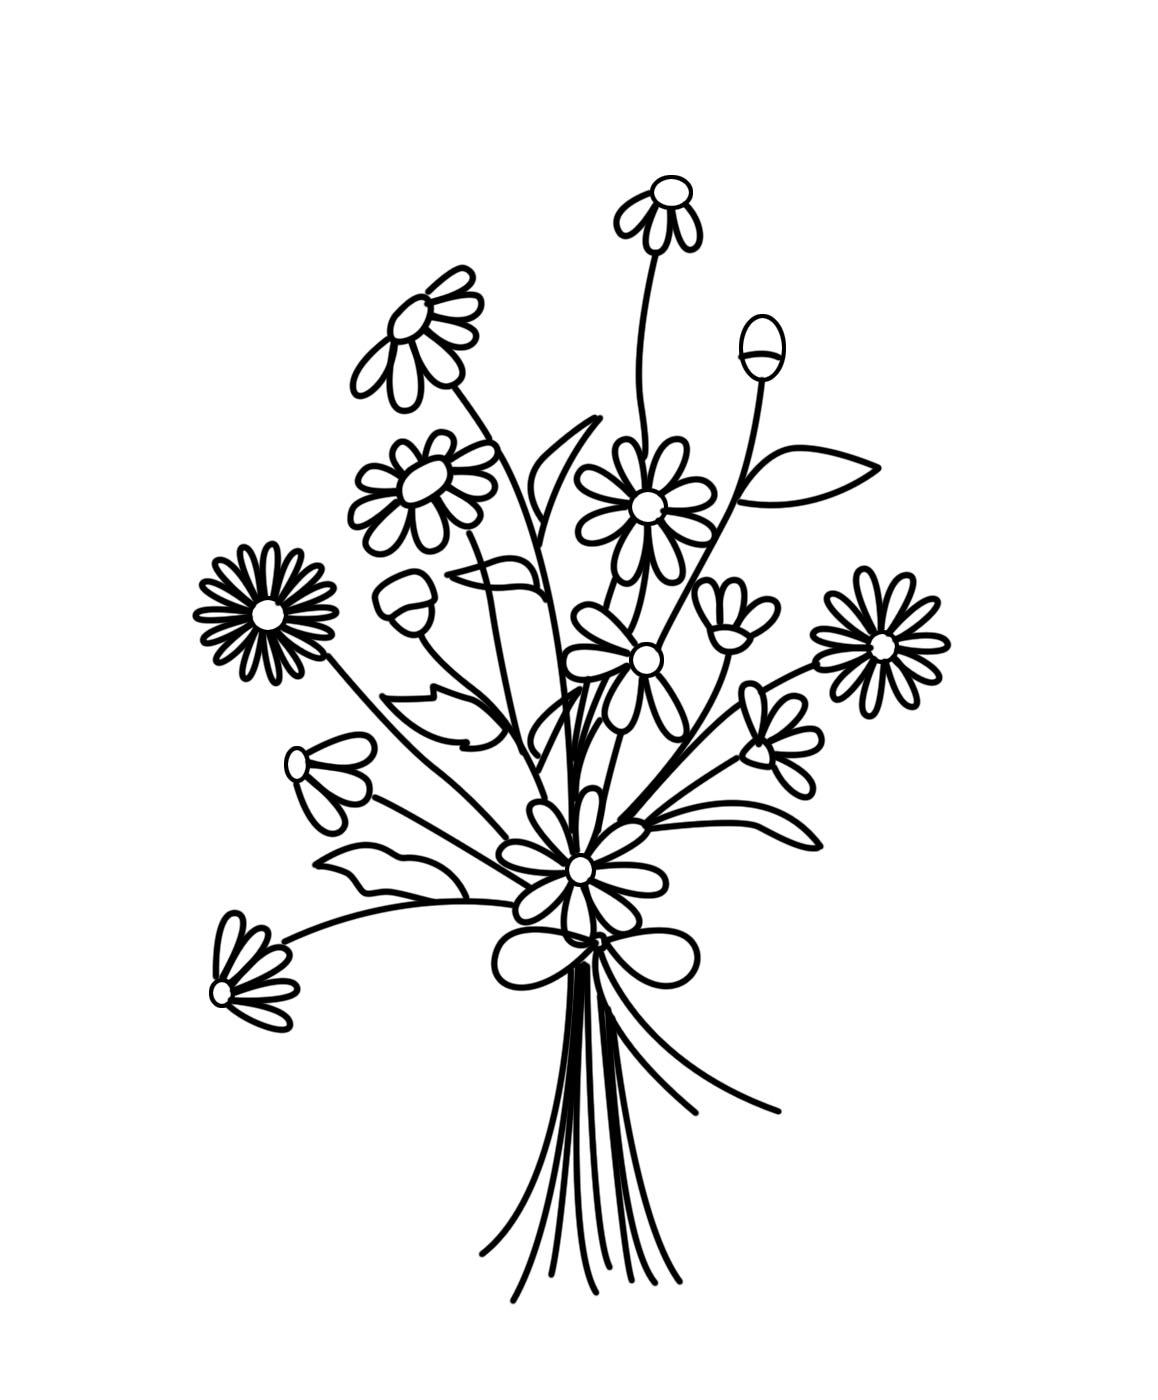 Mẫu thêu hoa cúc - Cúc là một loại hoa thanh tao và quyến rũ, được sử dụng rộng rãi trong nghệ thuật thêu. Bức tranh thêu hoa cúc này đem đến cho bạn những trải nghiệm tuyệt vời, một mẫu thêu hoa cúc đơn giản và trang nhã. Với đường nét tinh tế, gam màu nhẹ nhàng, bức tranh thêu này sẽ tạo ra một không gian thư thái và tĩnh lặng cho bạn.